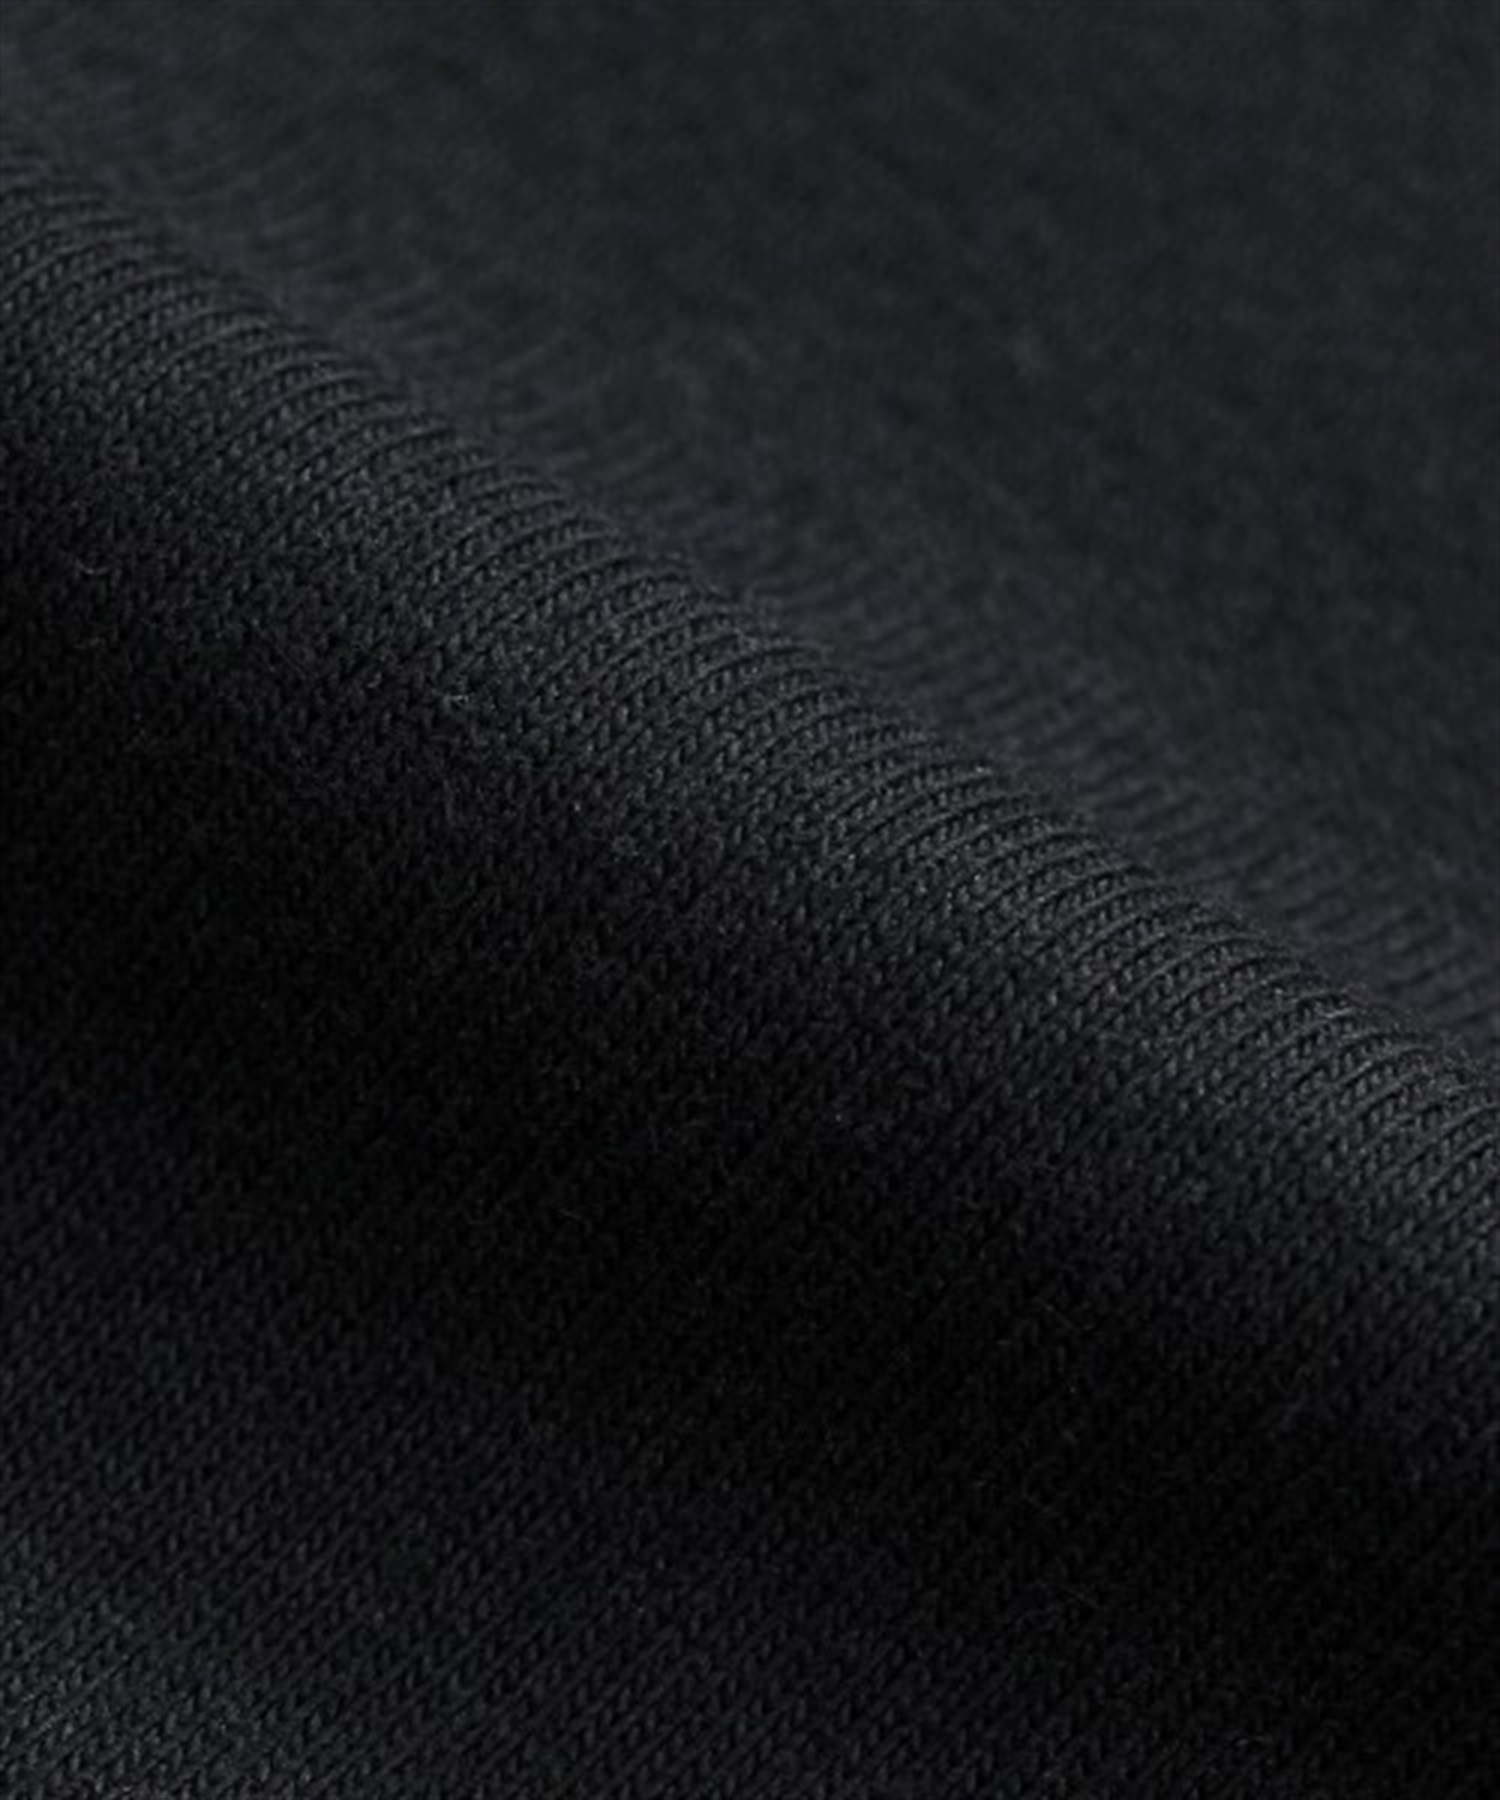 【マトメガイ対象】メンズ 半袖 Tシャツ HANES ヘインズ H5180 BEEFY CREW NECK T-SHIRT ビーフィー クルーネック Tシャツ II C8 GW5M(060-S)